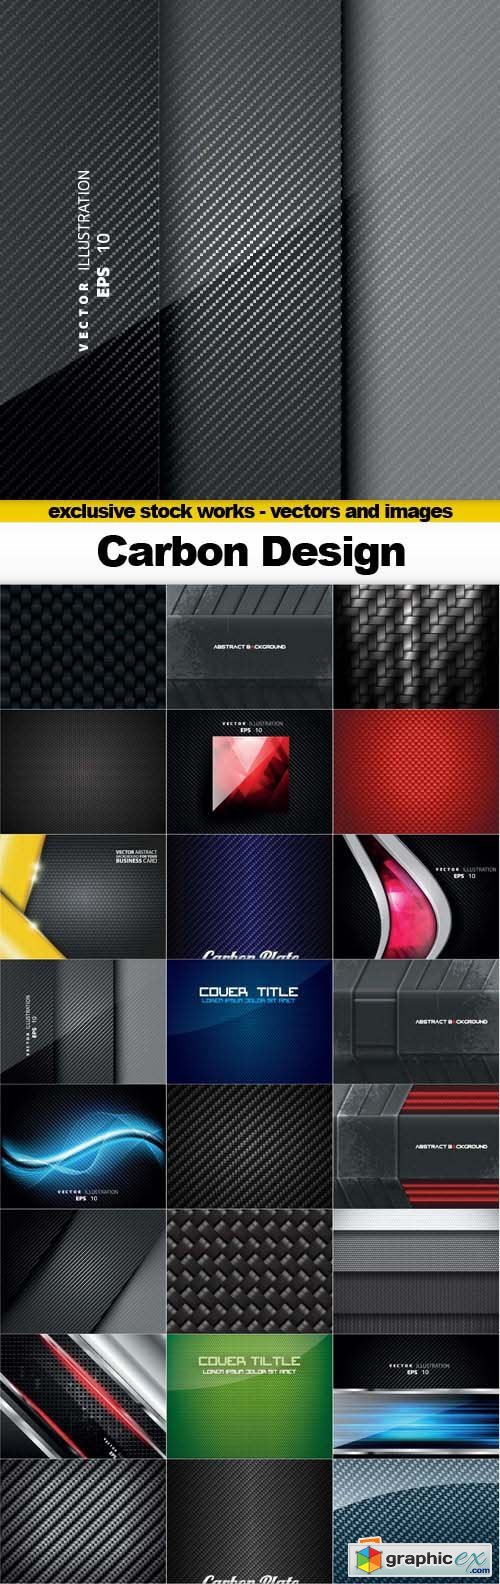 Carbon Design - 24x EPS